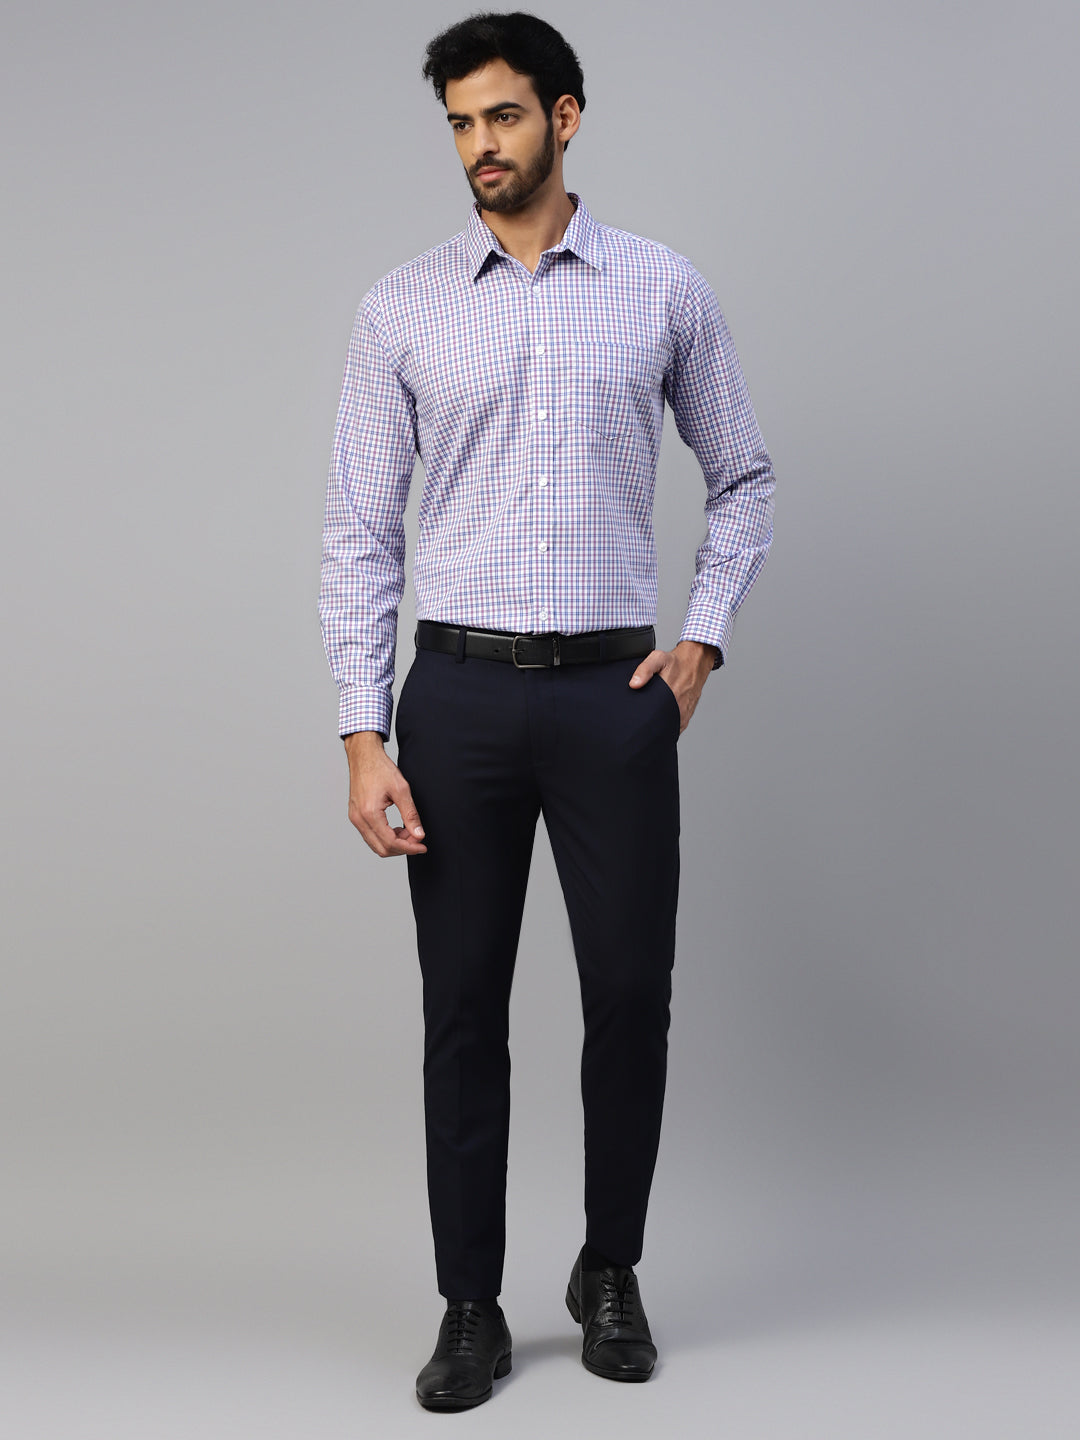 Men's Blue & Purple Small Checks Formal Shirt